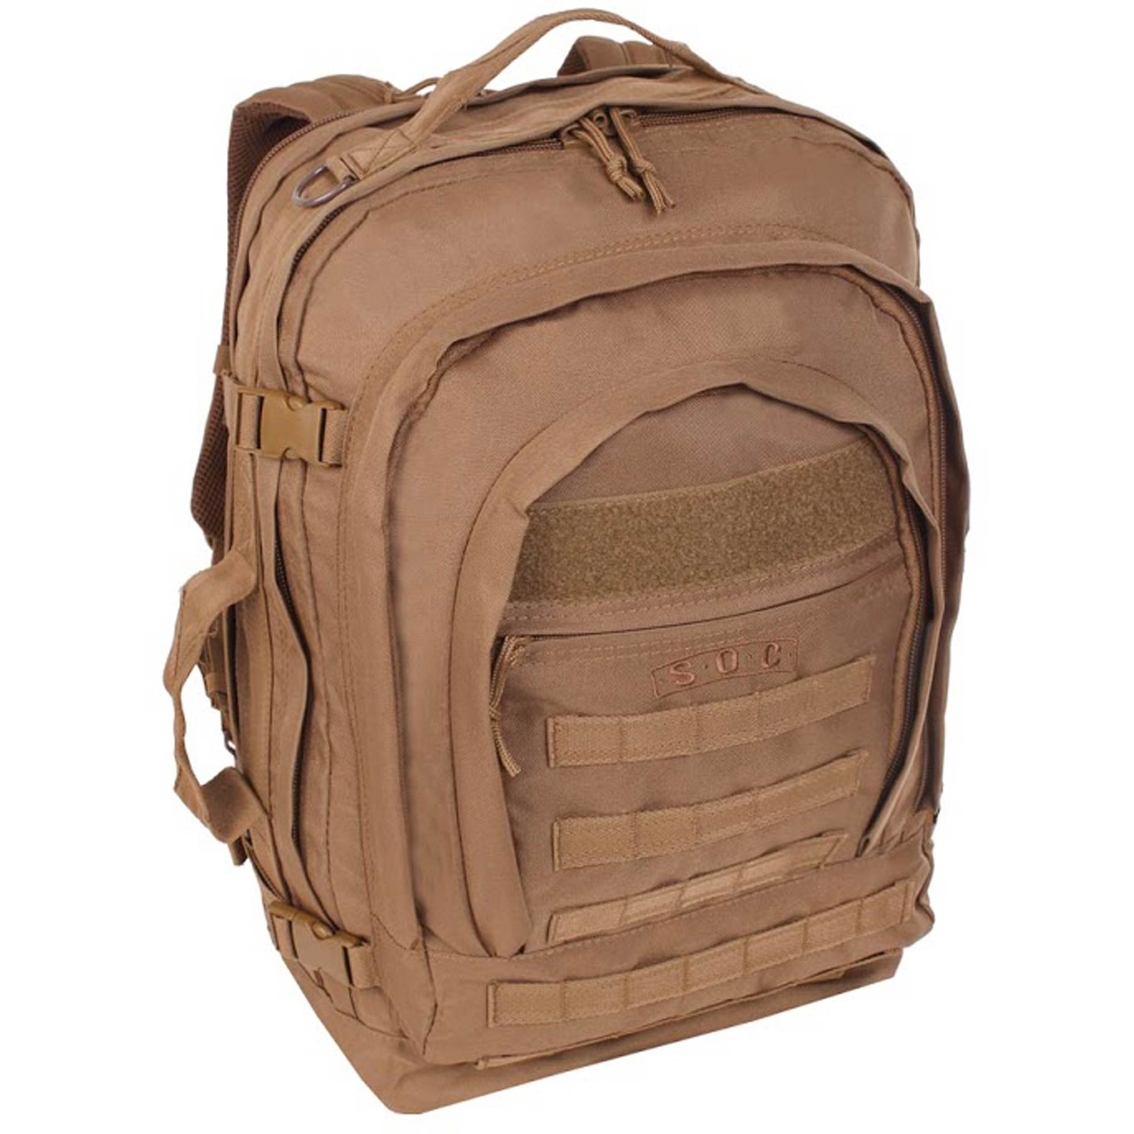 Sandpiper Of California Bugout Bag, Backpacks